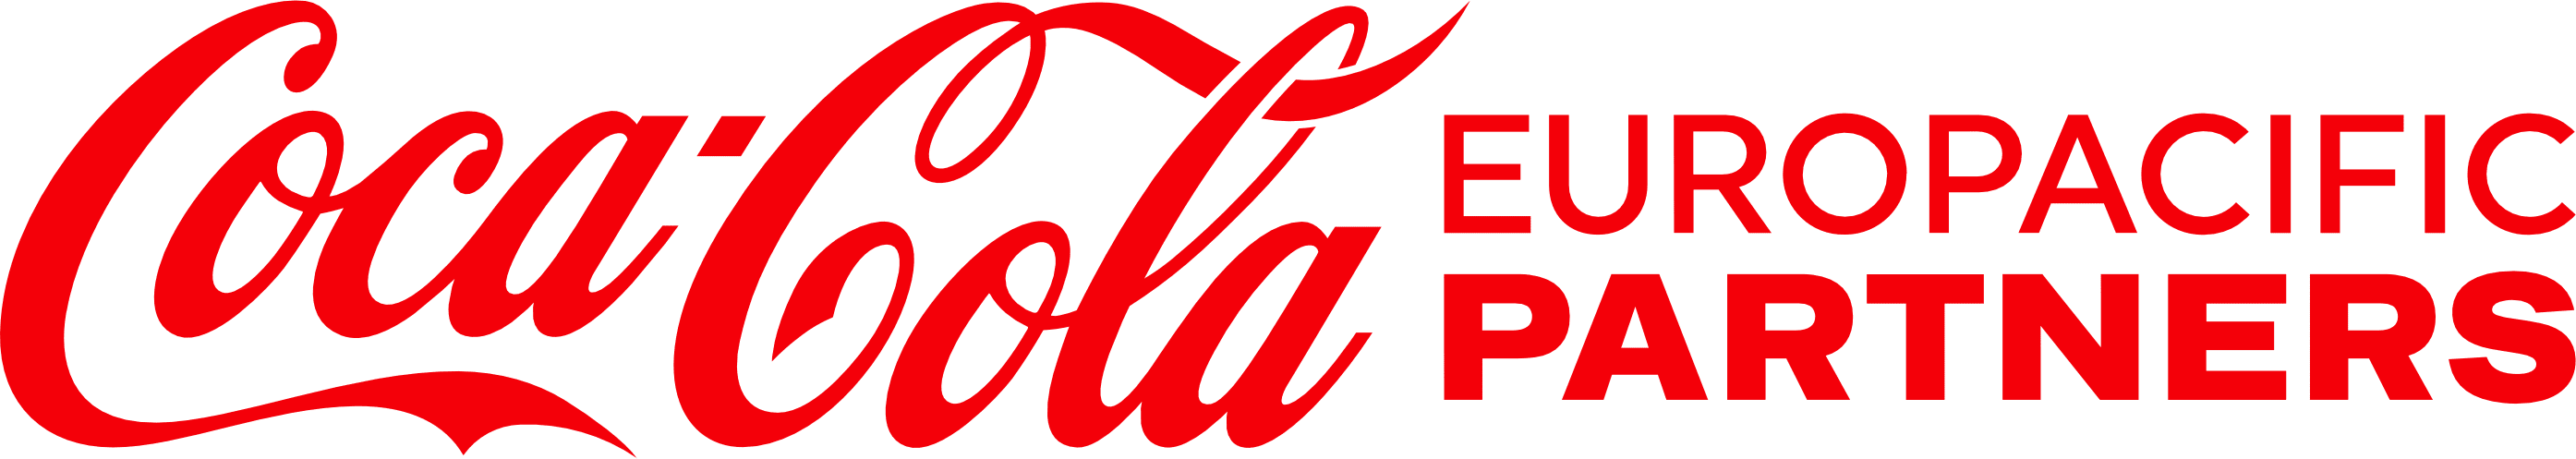 Coca Cola logotipo